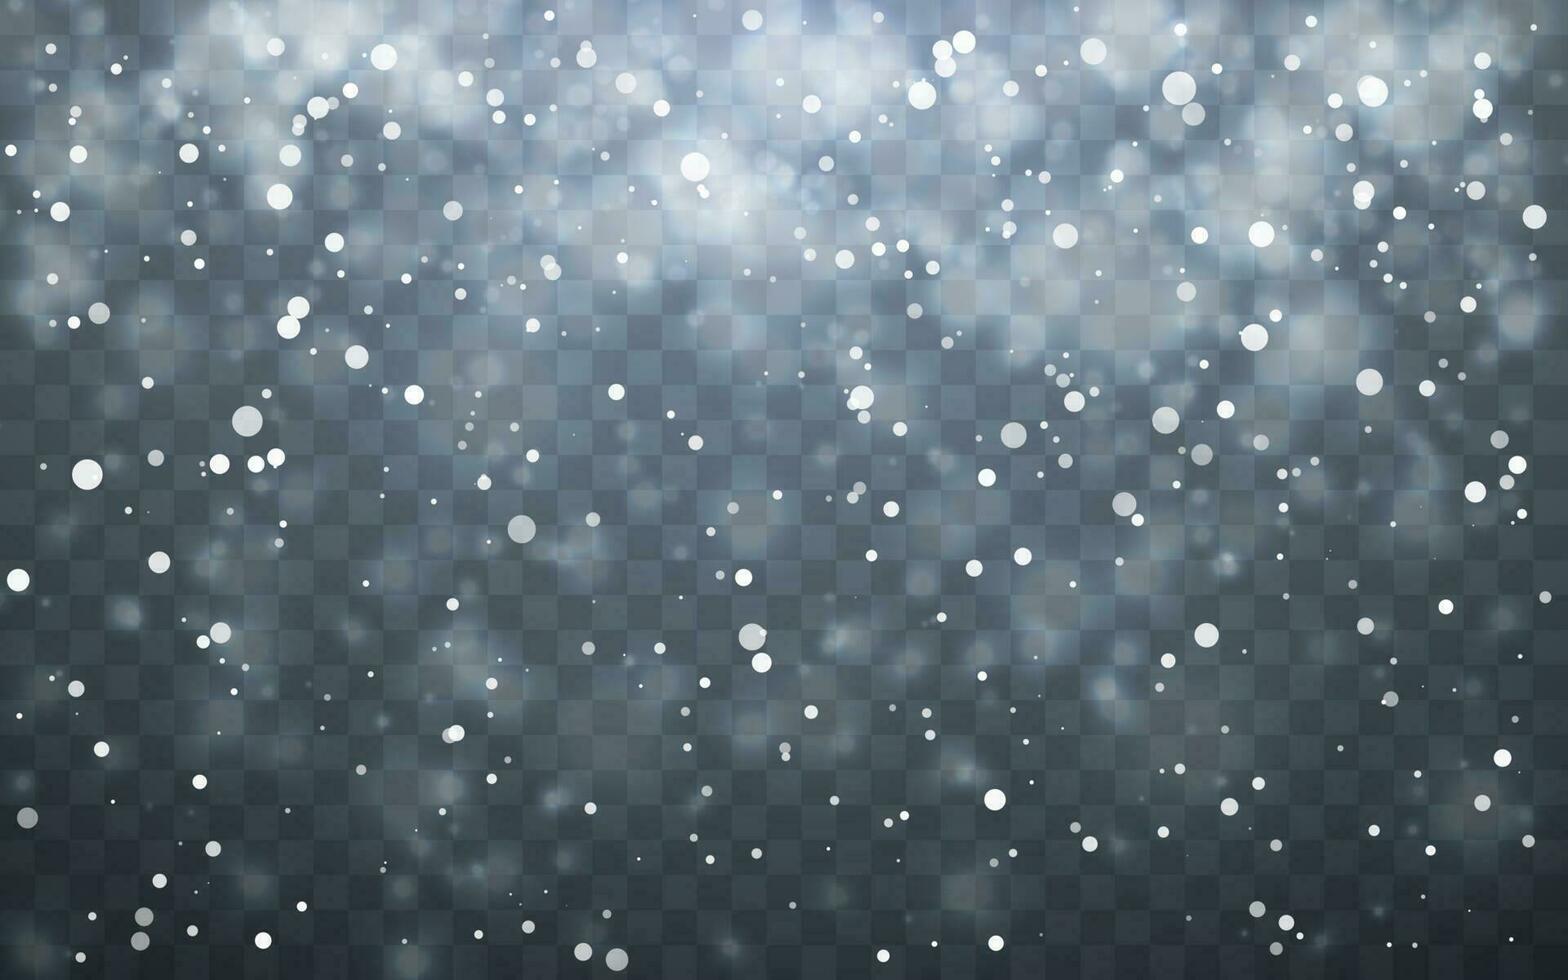 Weihnachten Schnee. fallen Schneeflocken auf dunkel Hintergrund. Schneefall. Vektor Illustration